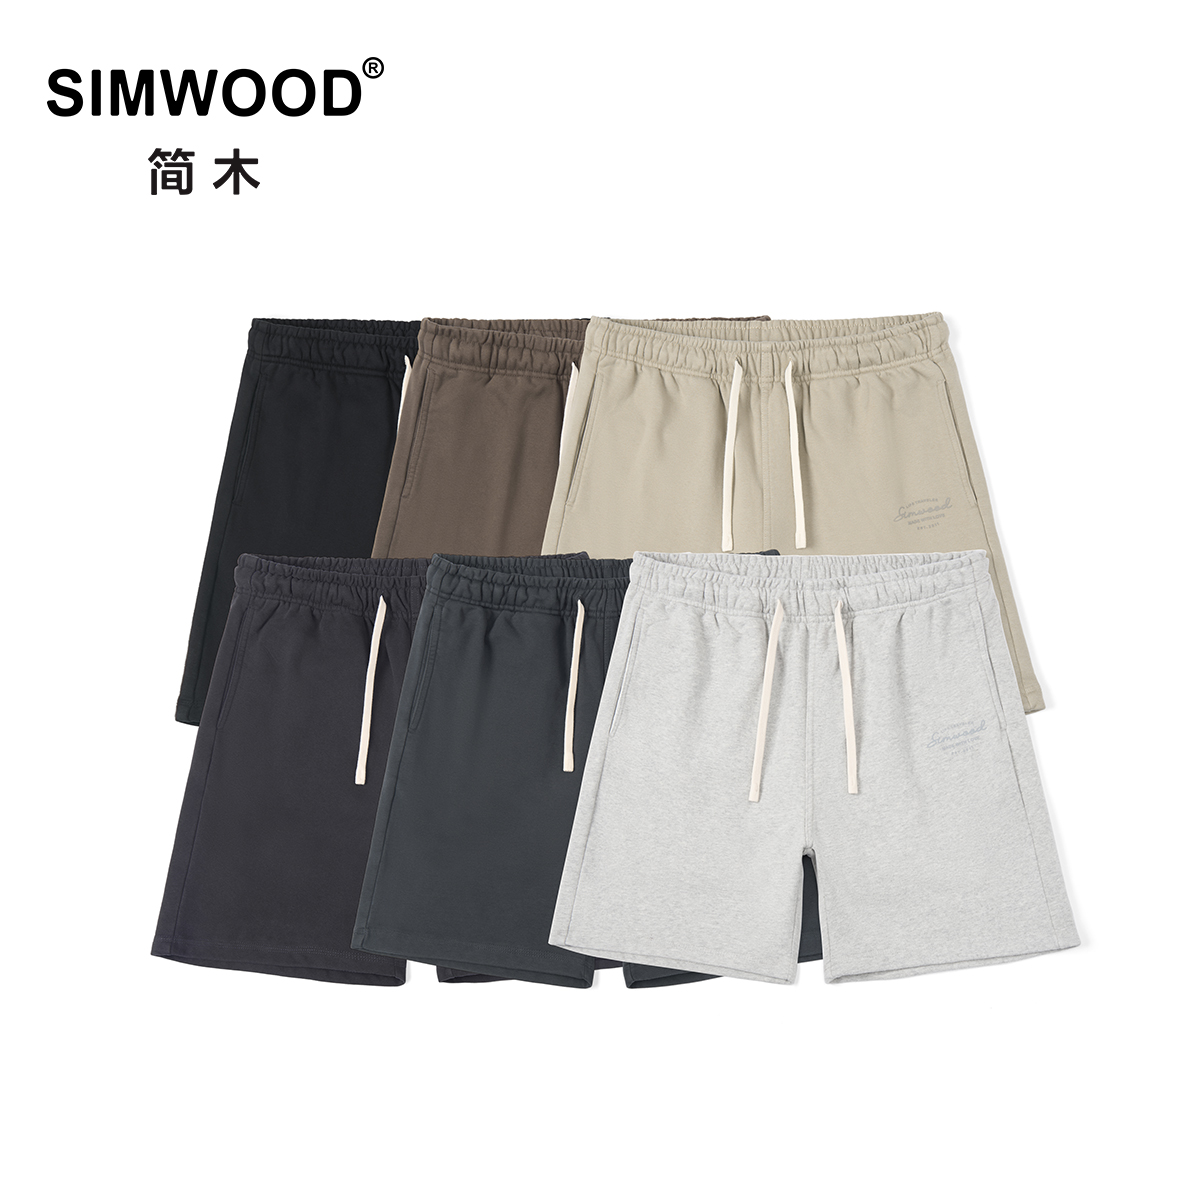 Simwood简木男装【宽松版型】400g碳磨紧密棉五分卫裤男士短裤